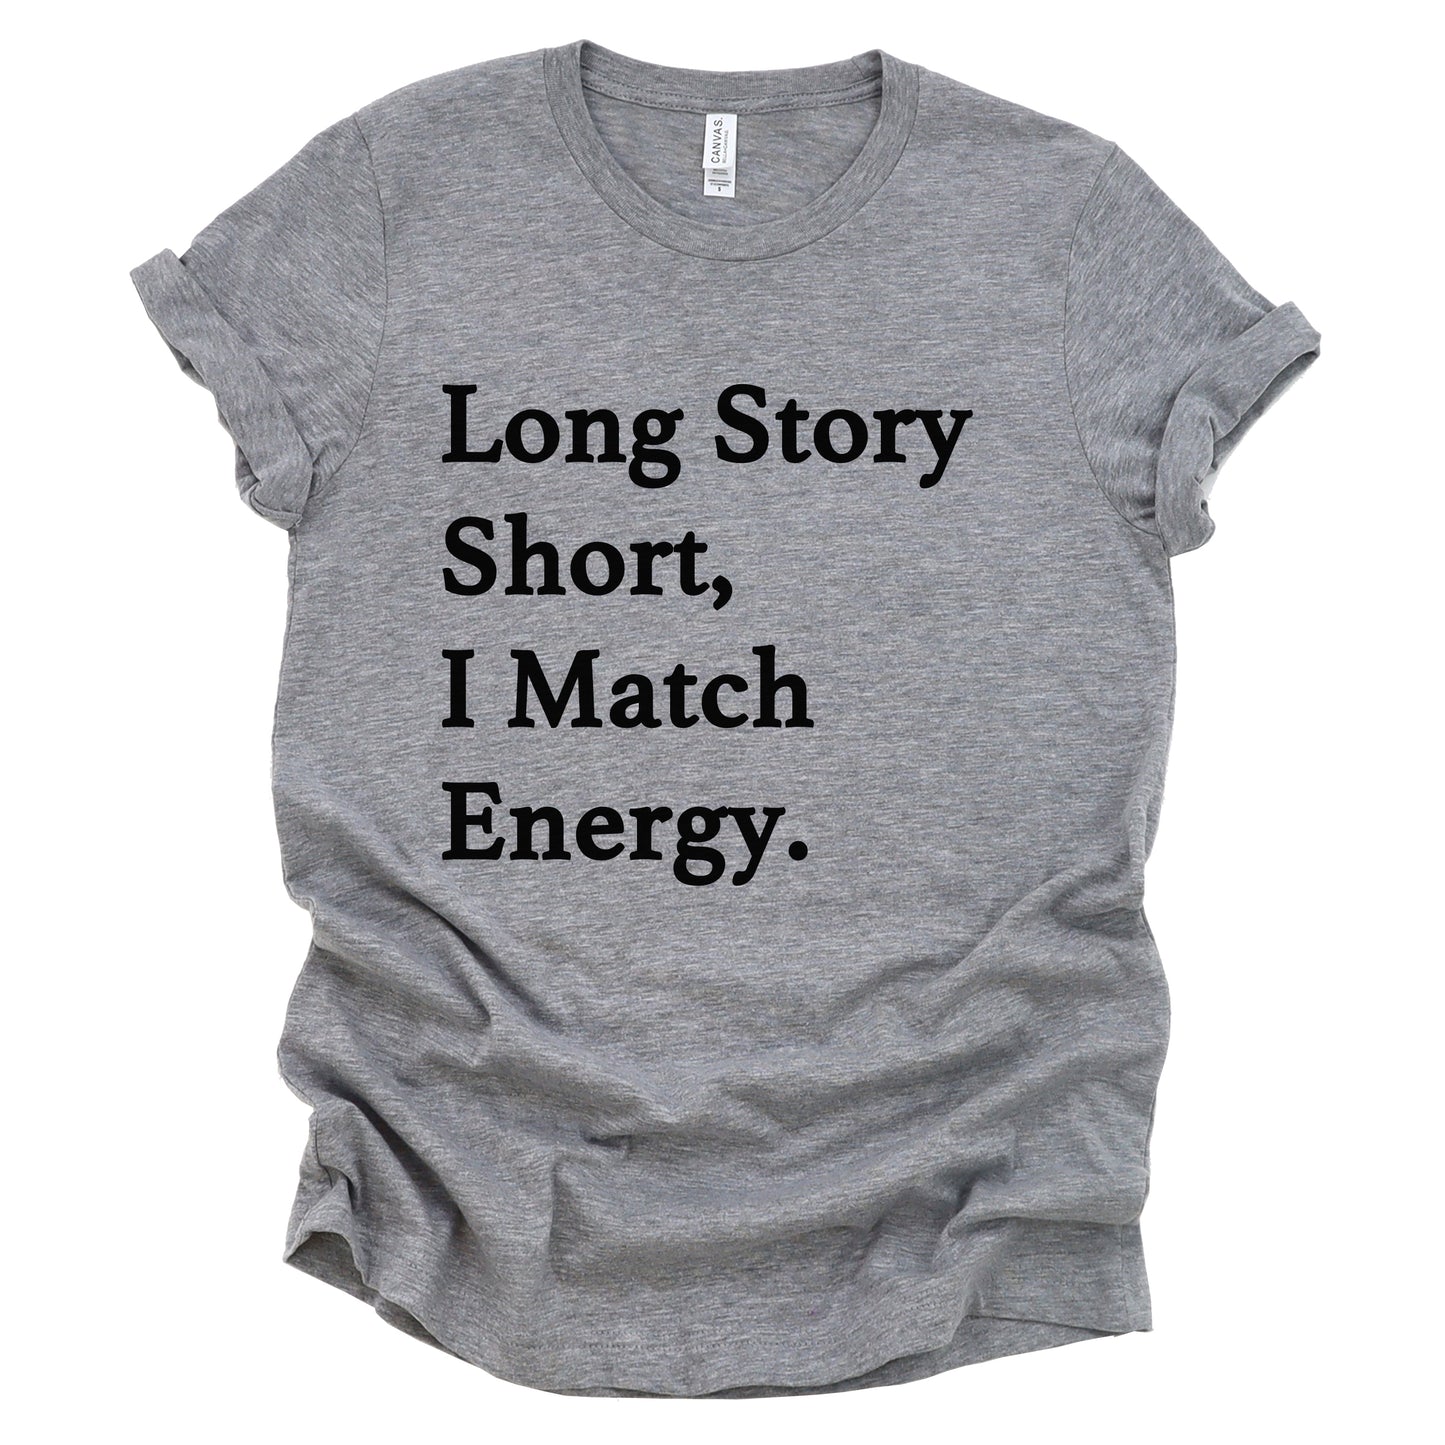 "Long Story Short" Tee